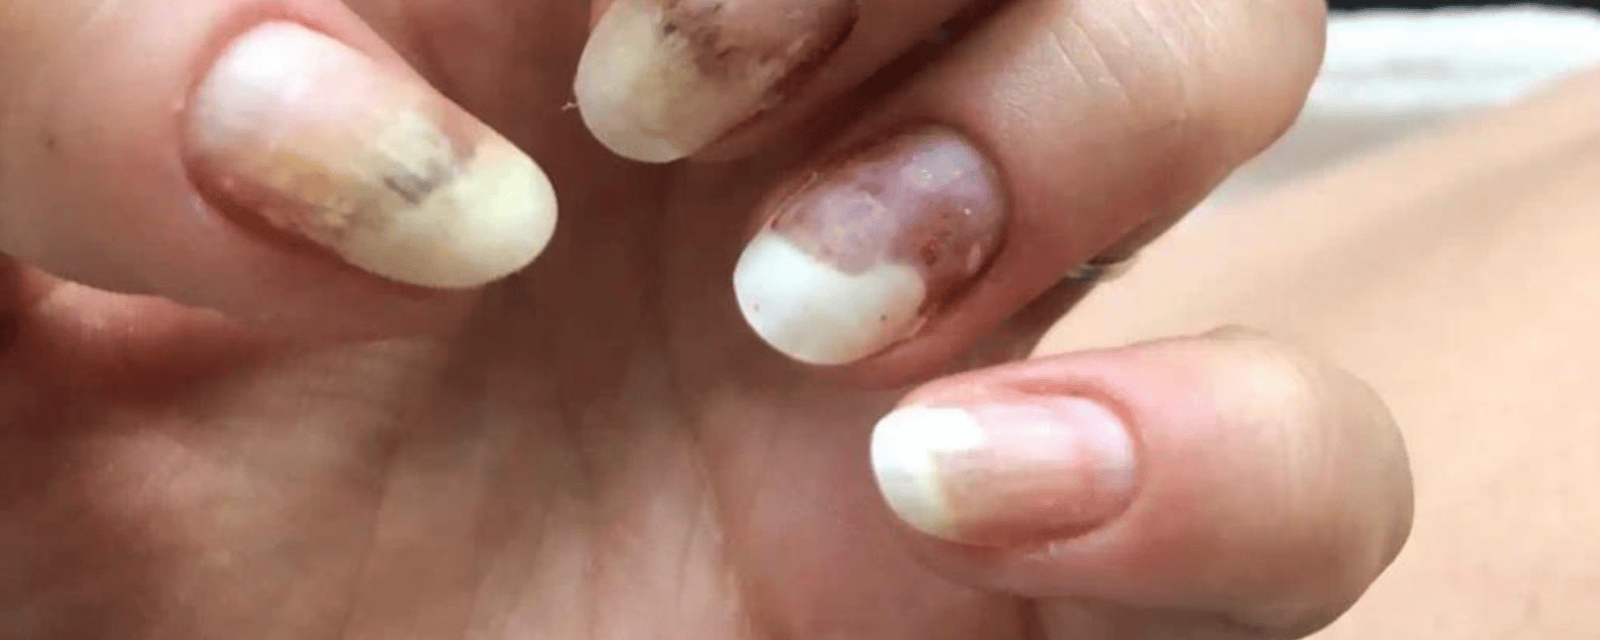 Une entreprise québécoise de vernis à ongles dans la mire de Santé Canada après de nombreux incidents inquiétants